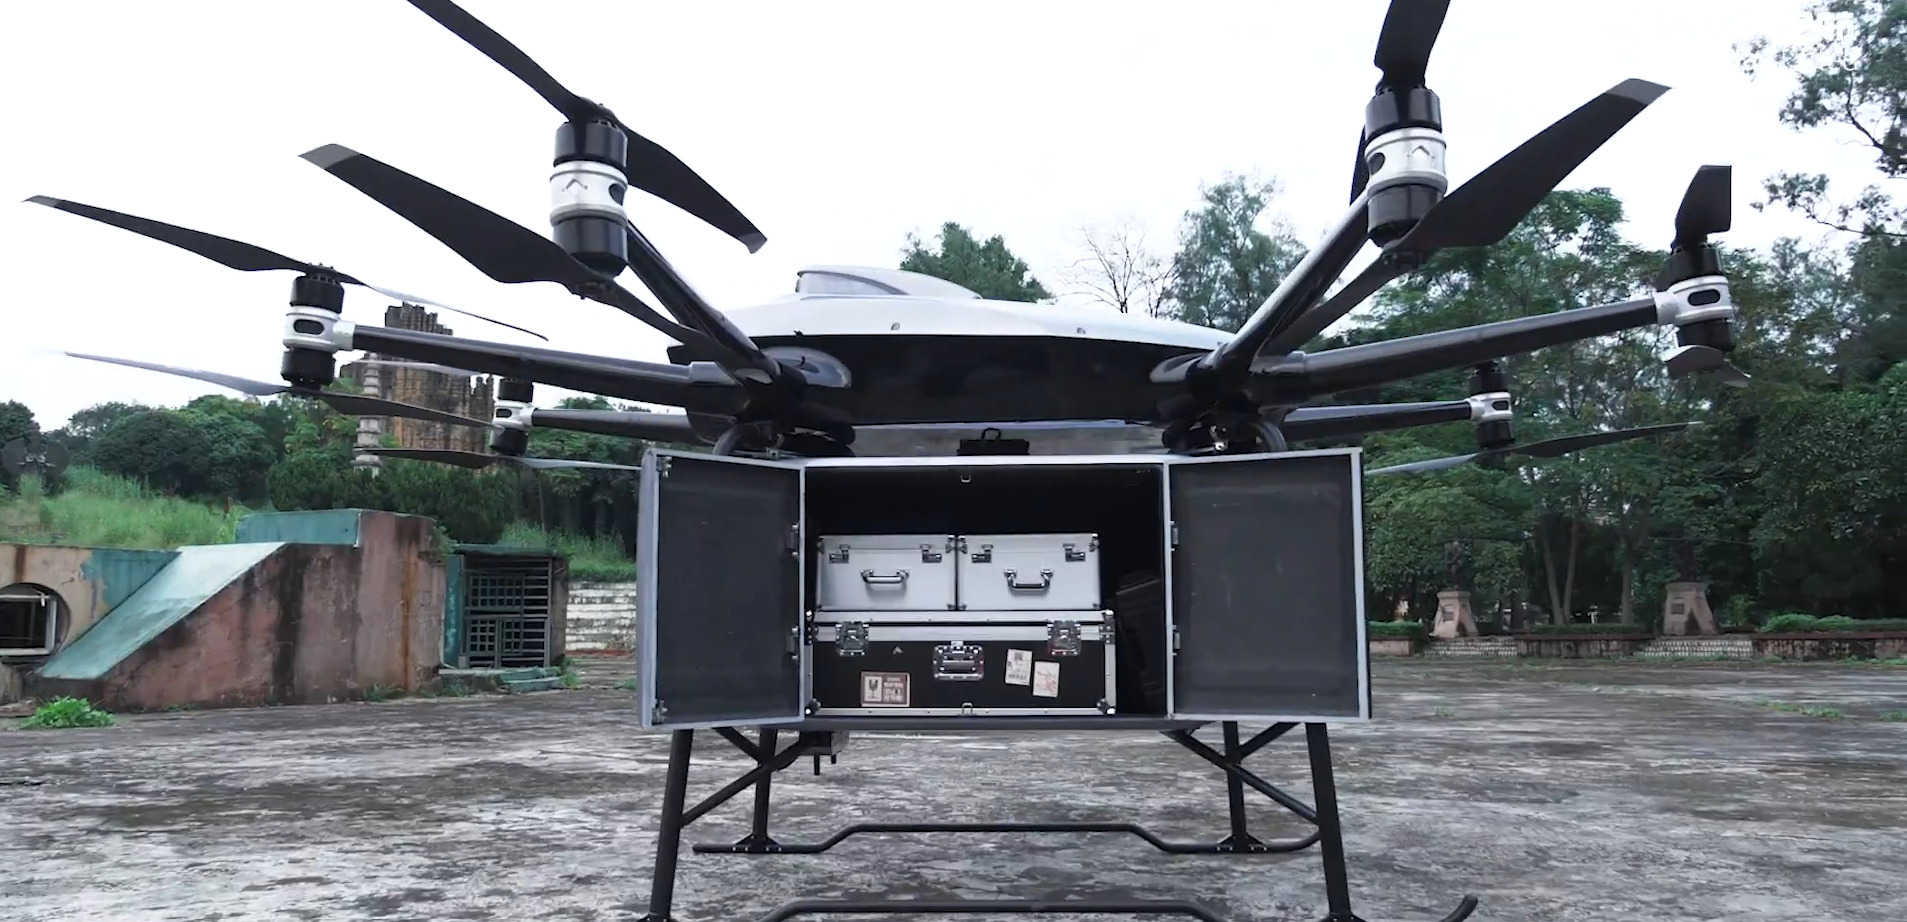 Nowe drony przetransportują 220-kilogramowy ładunek